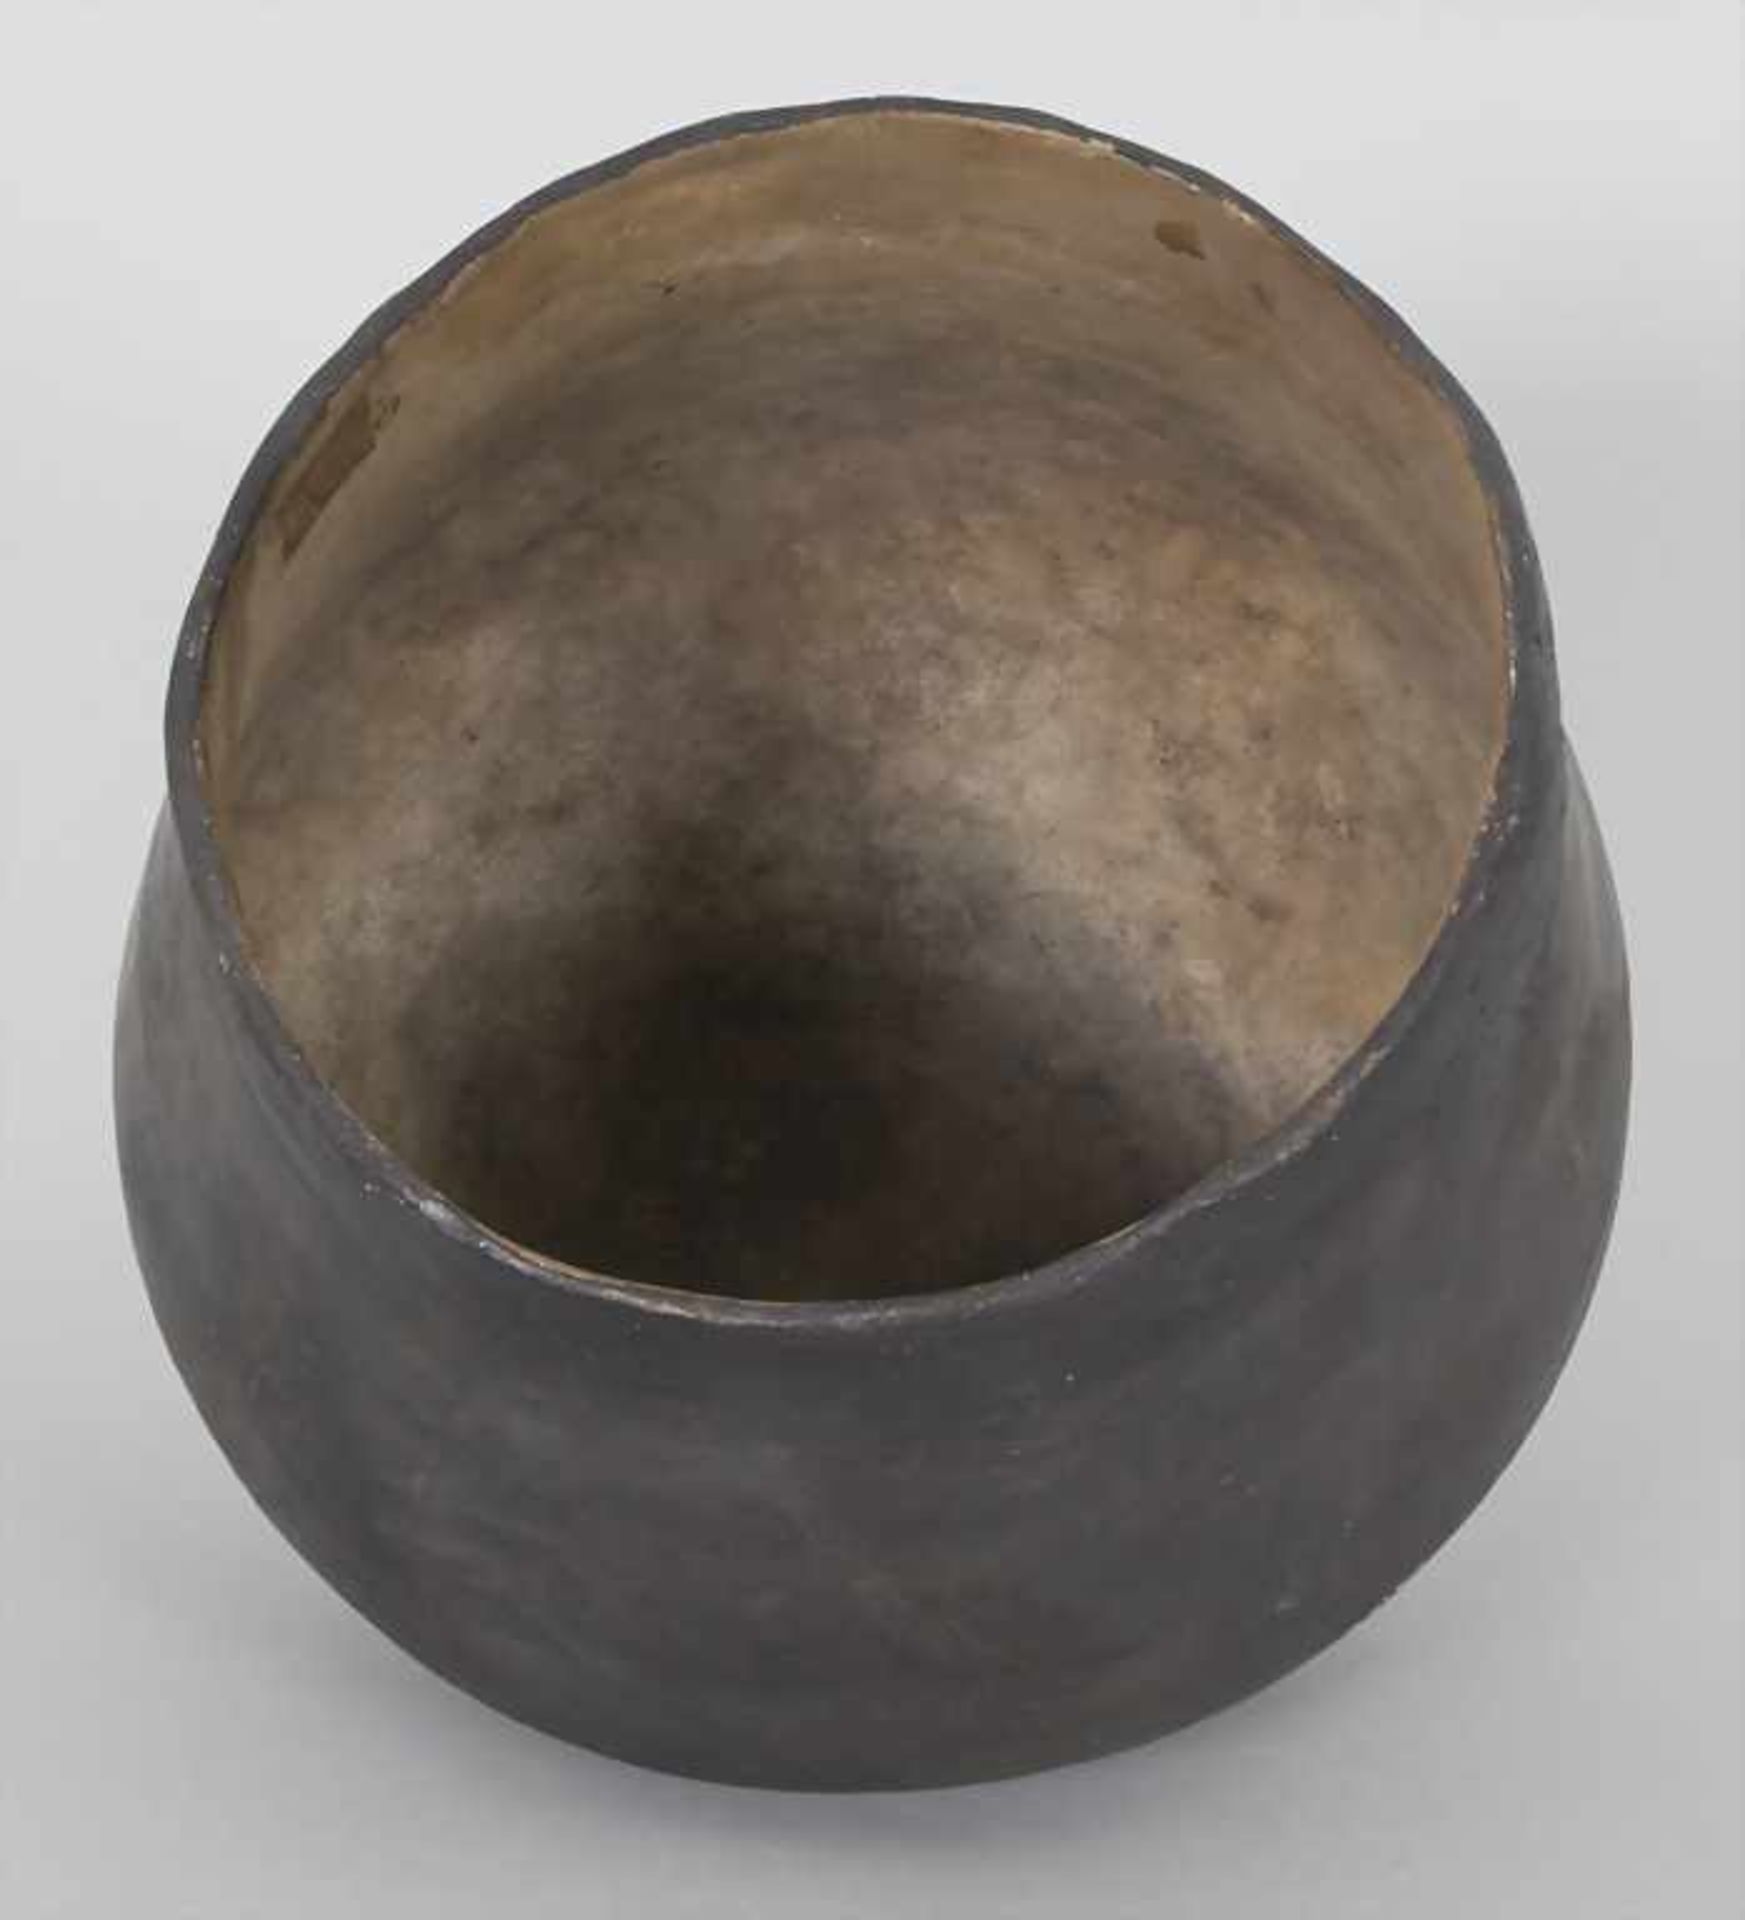 Bronzezeitliches Keramik-Gefäß / A Bronze Age ceramic vessel, Lausitzer Kultur, 9. - 6. Jh. v. Chr. - Bild 4 aus 6